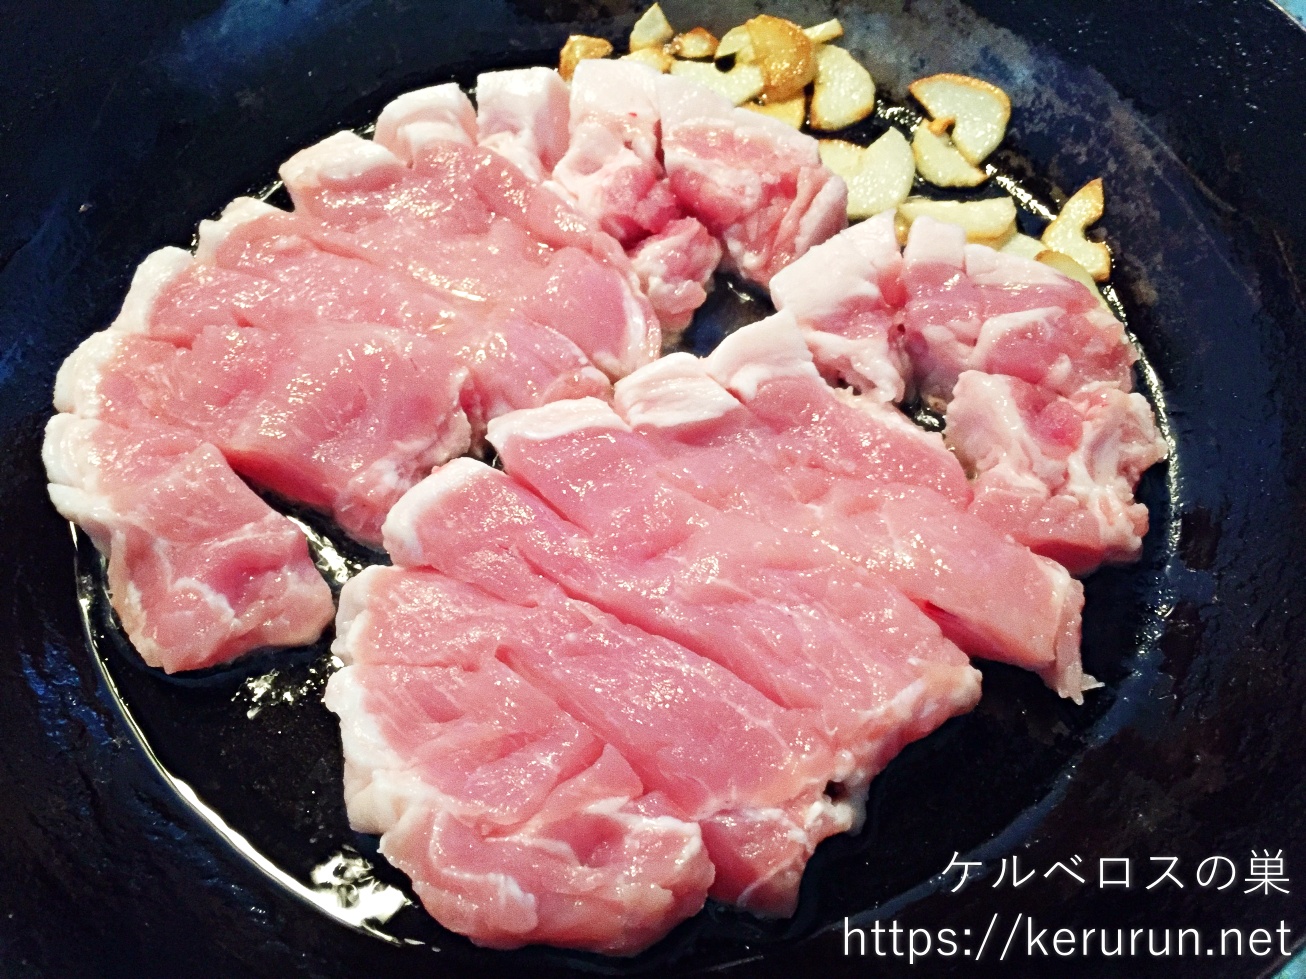 コストコの豚ロースとんかつ用厚切り肉でトンテキ定食の晩ごはん